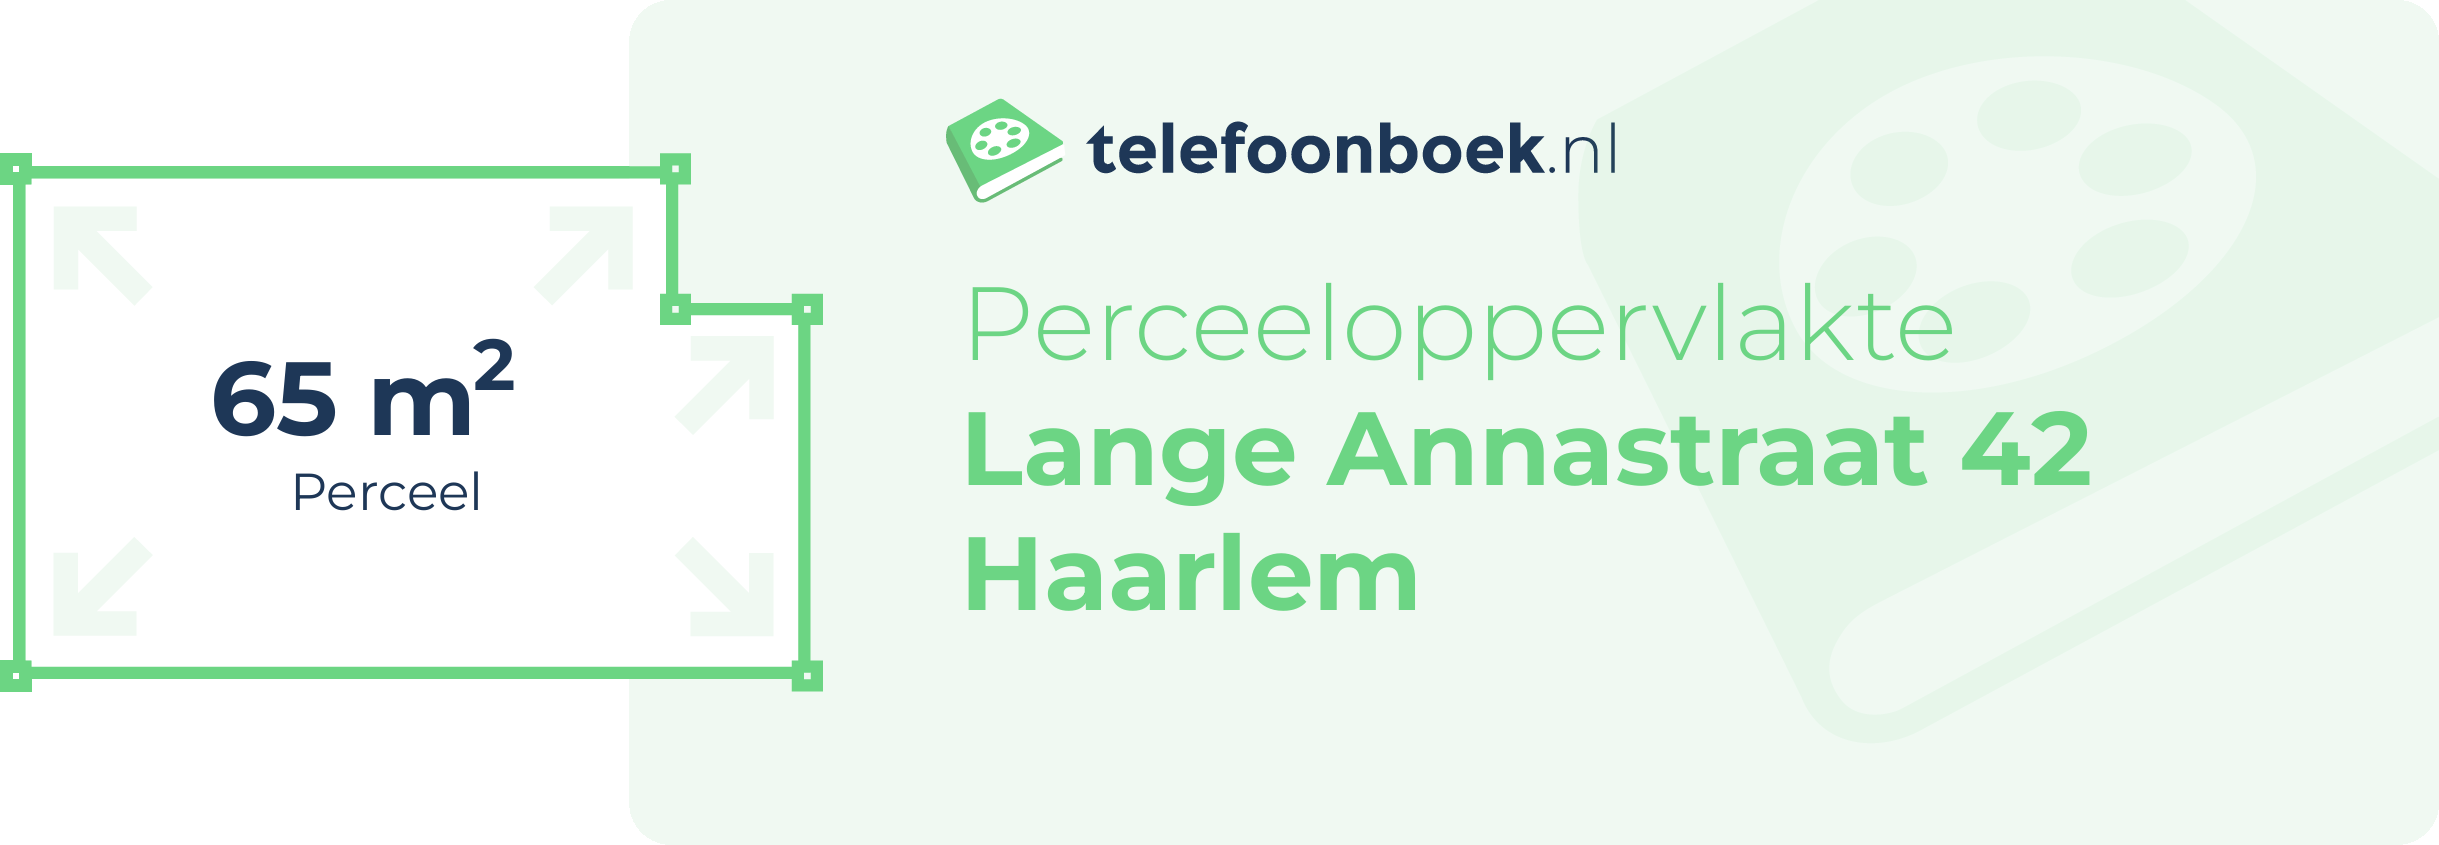 Perceeloppervlakte Lange Annastraat 42 Haarlem